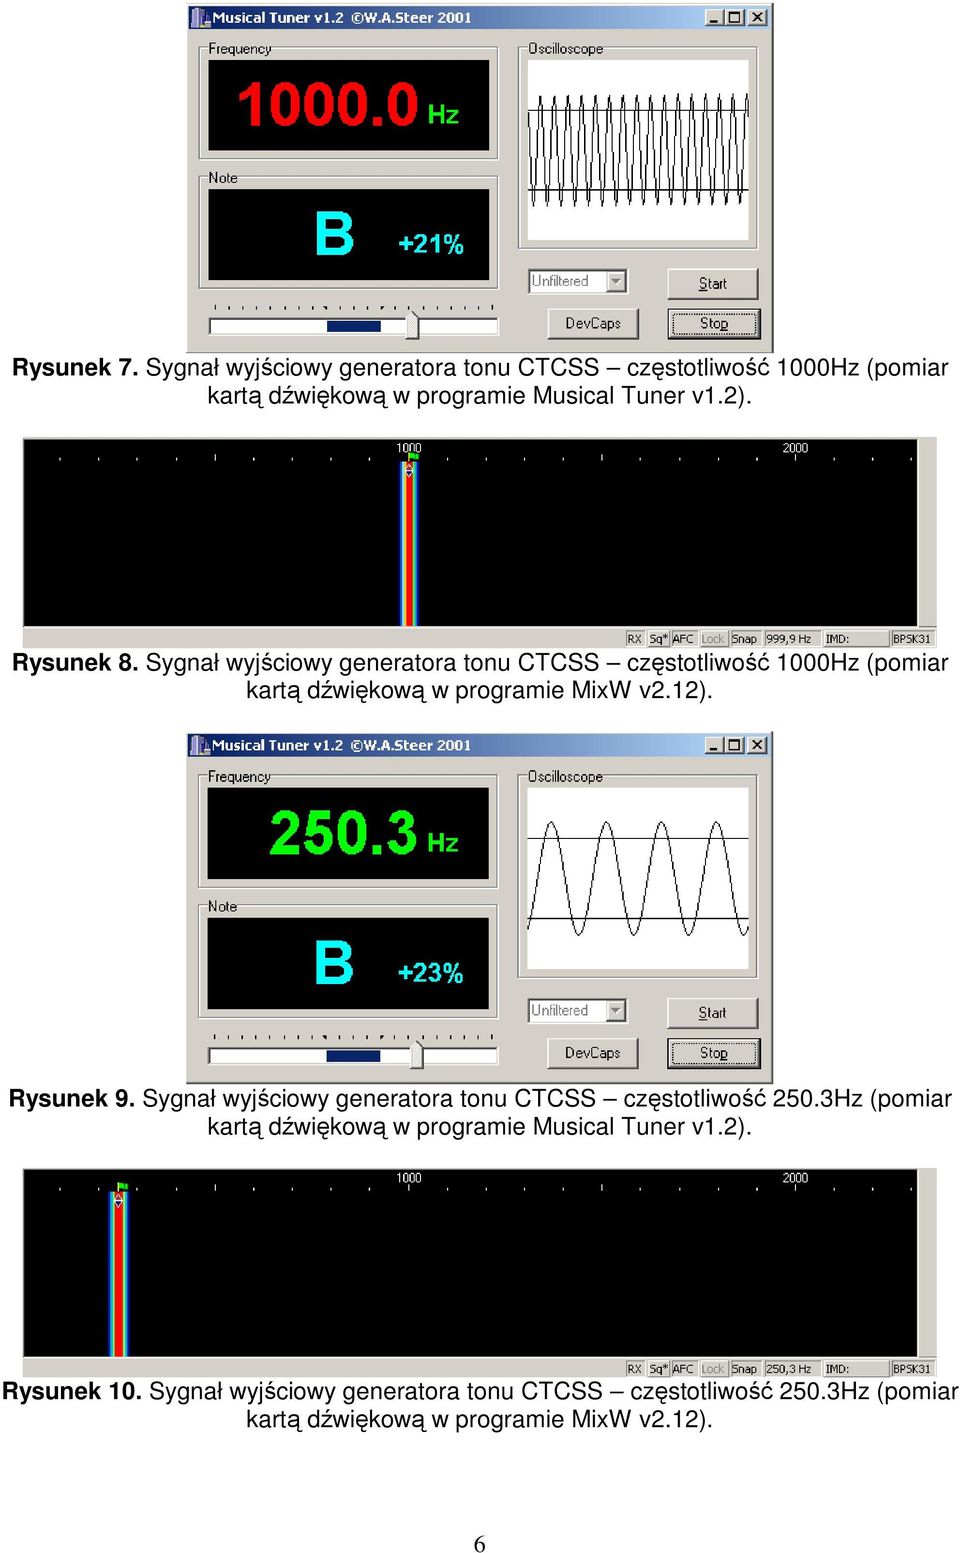 Rysunek 9. Sygnał wyjściowy generatora tonu CTCSS częstotliwość 250.3Hz (pomiar kartą dźwiękową w programie Musical Tuner v1.